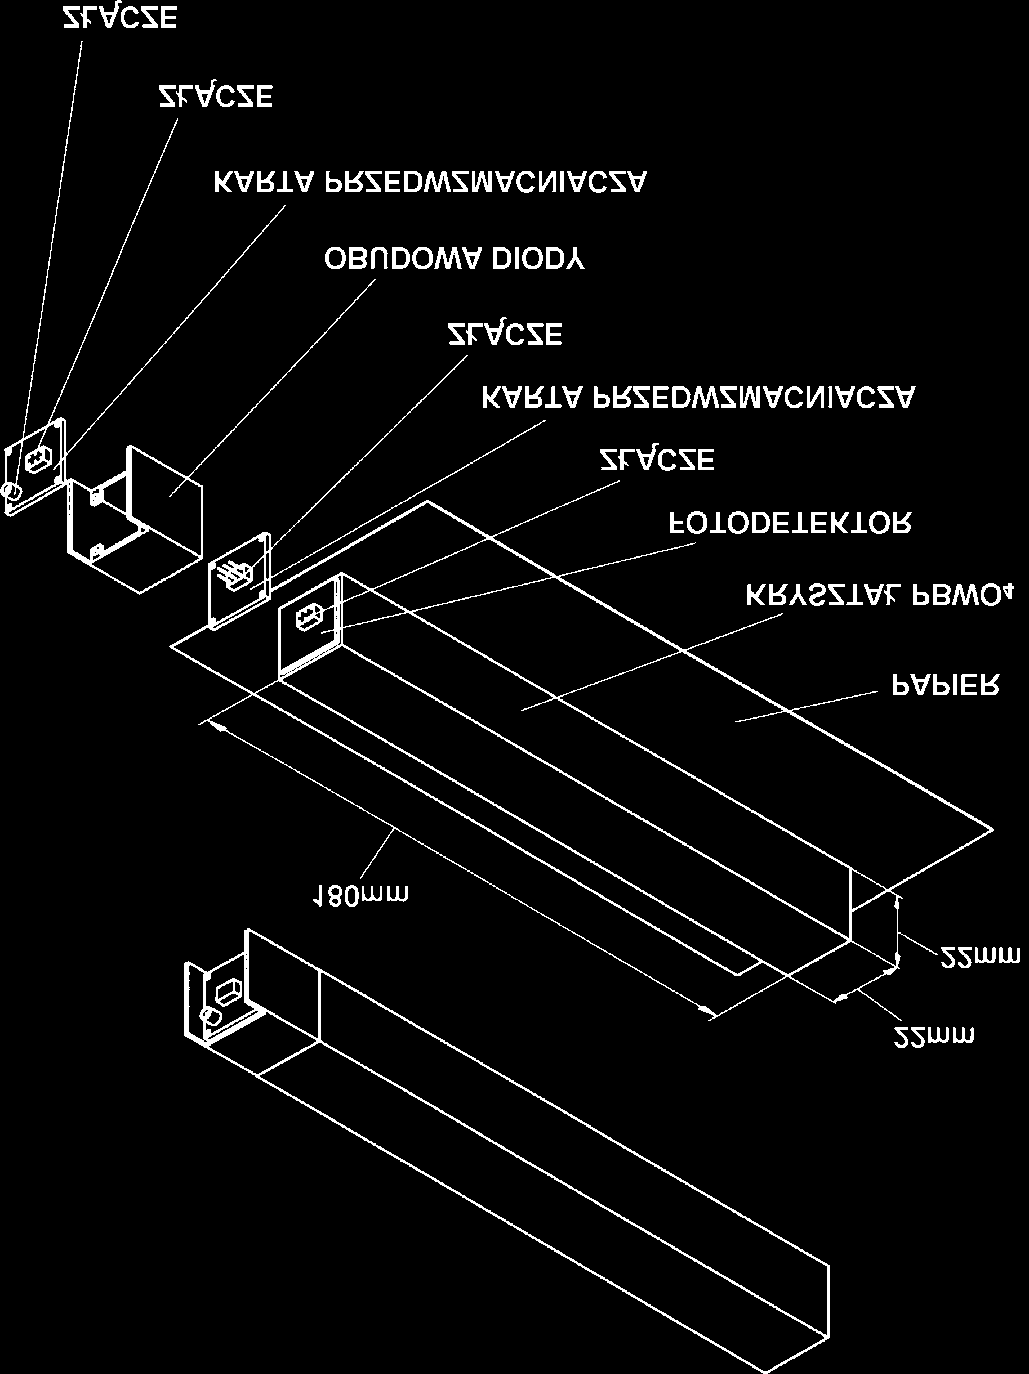 Budowa detektora Pojedynczy element Jednostka